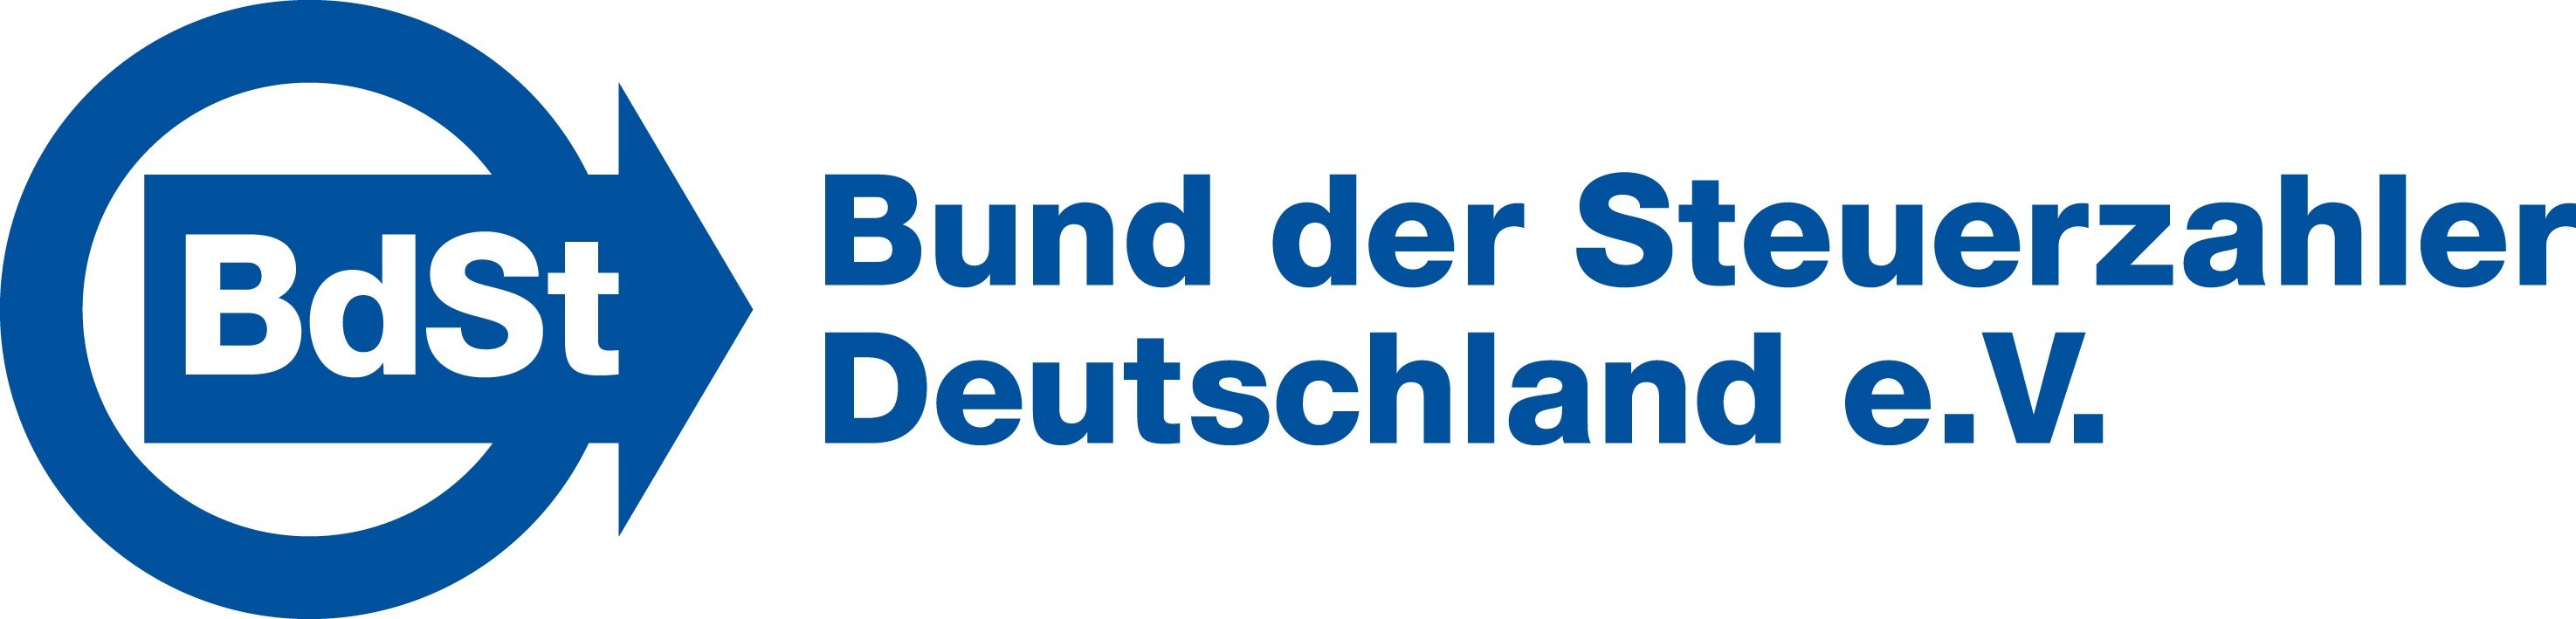 logo bdst Deutschland